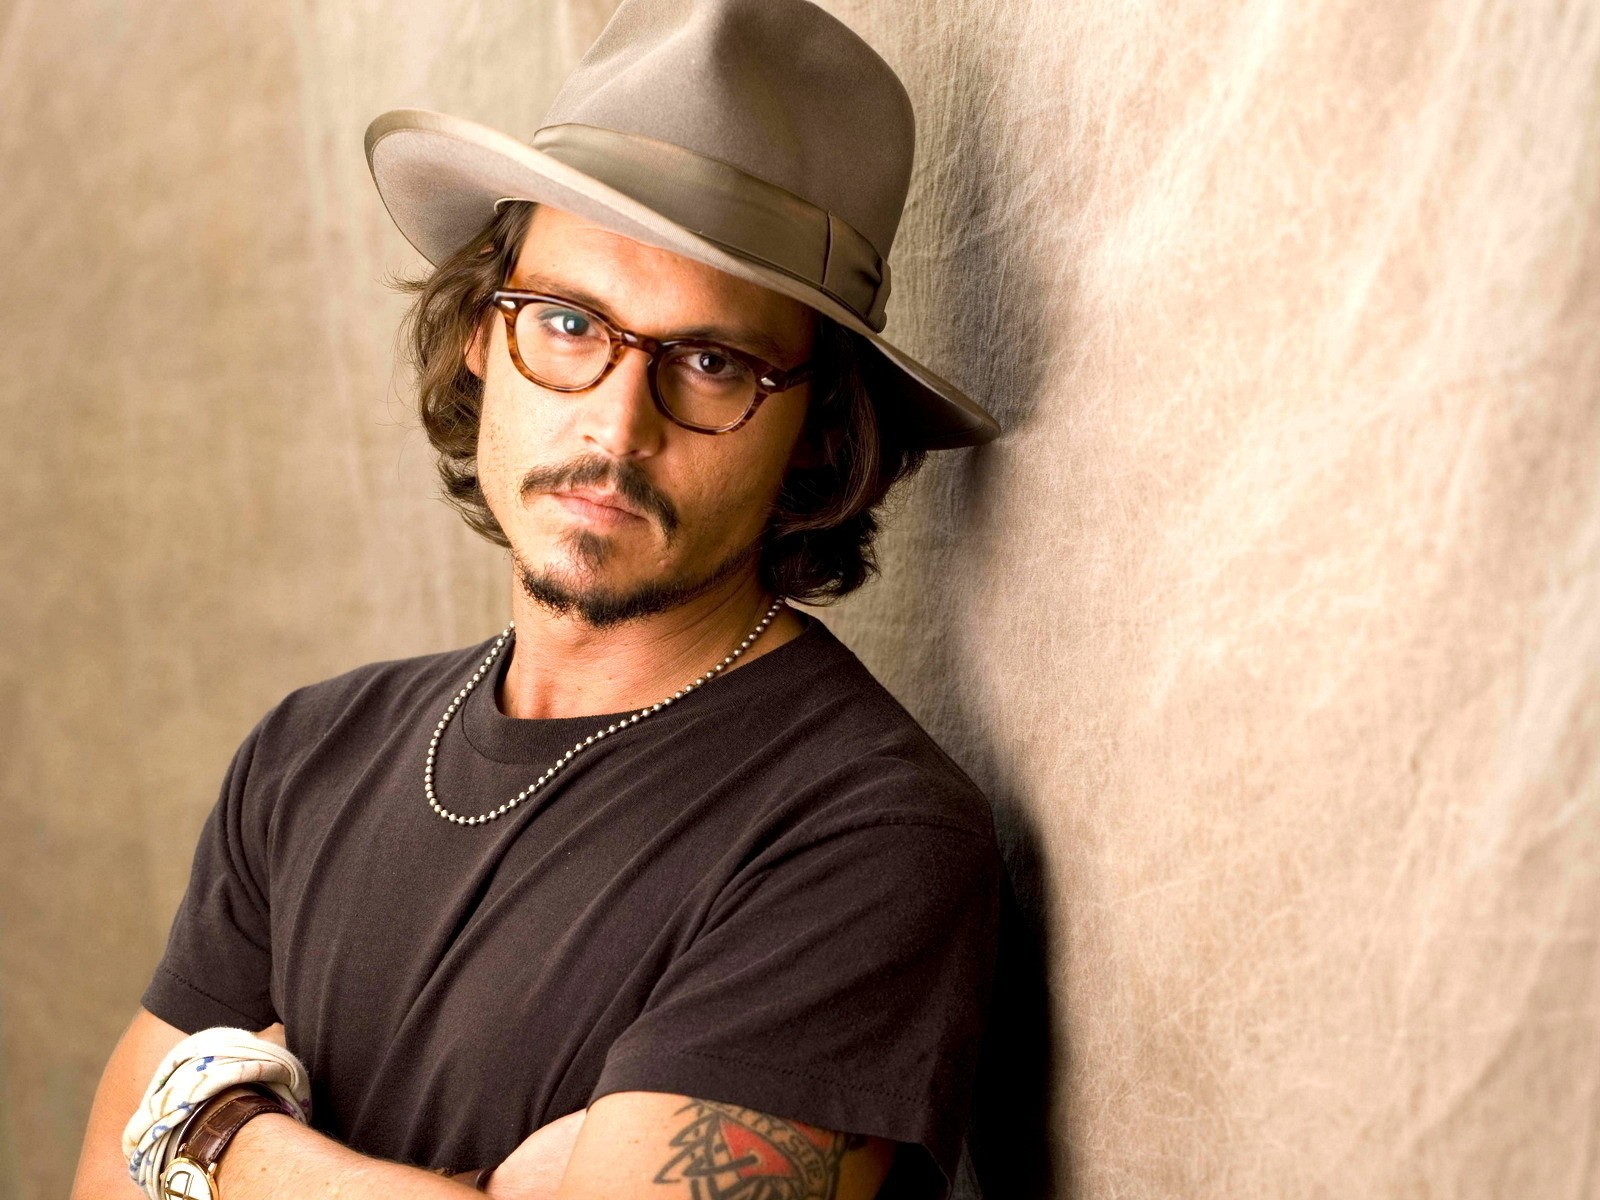 Johnny Depp In Specs wallpaper Wallpaper, HD Celebrities 4K Wallpapers